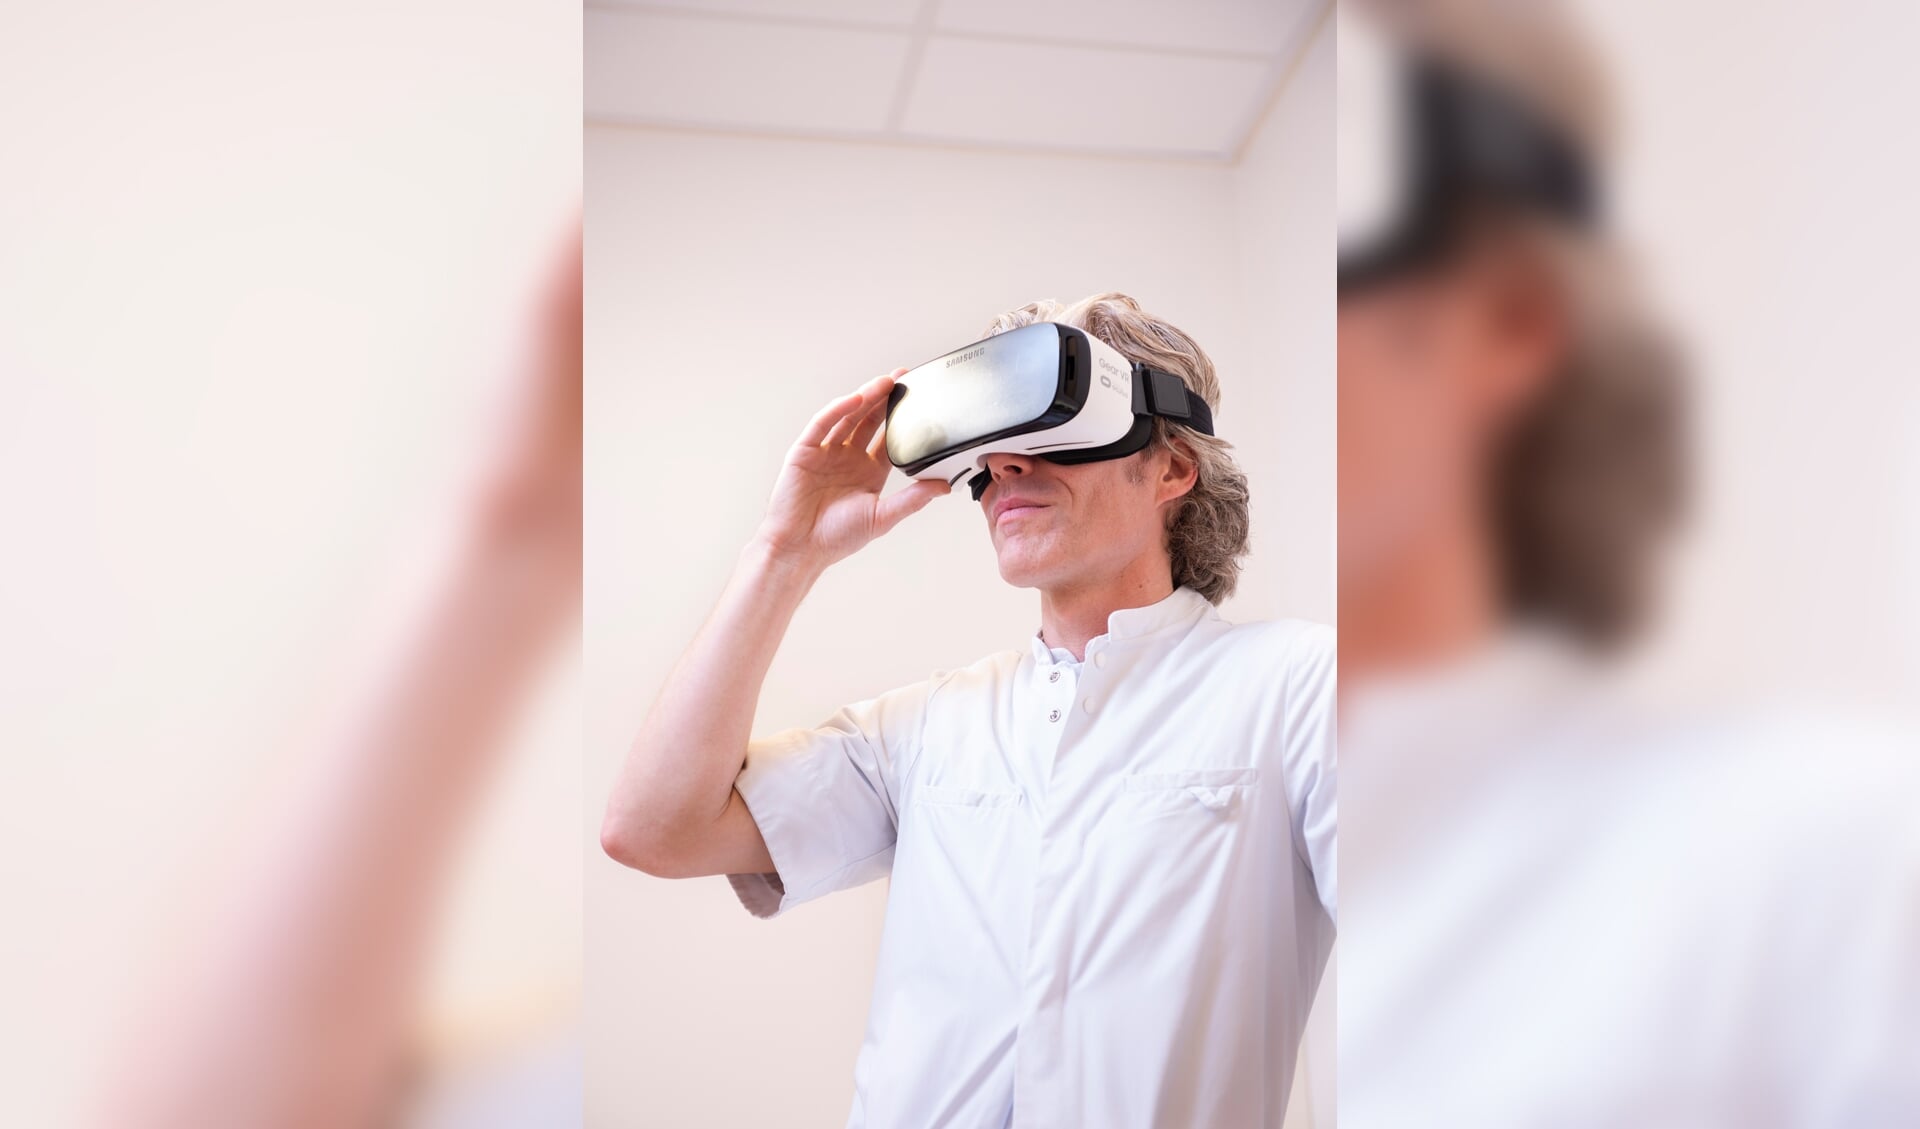 De VR-bril is een van de mogelijkheden om de patiënt afleiding te bezorgen (foto Sake Elzinga).